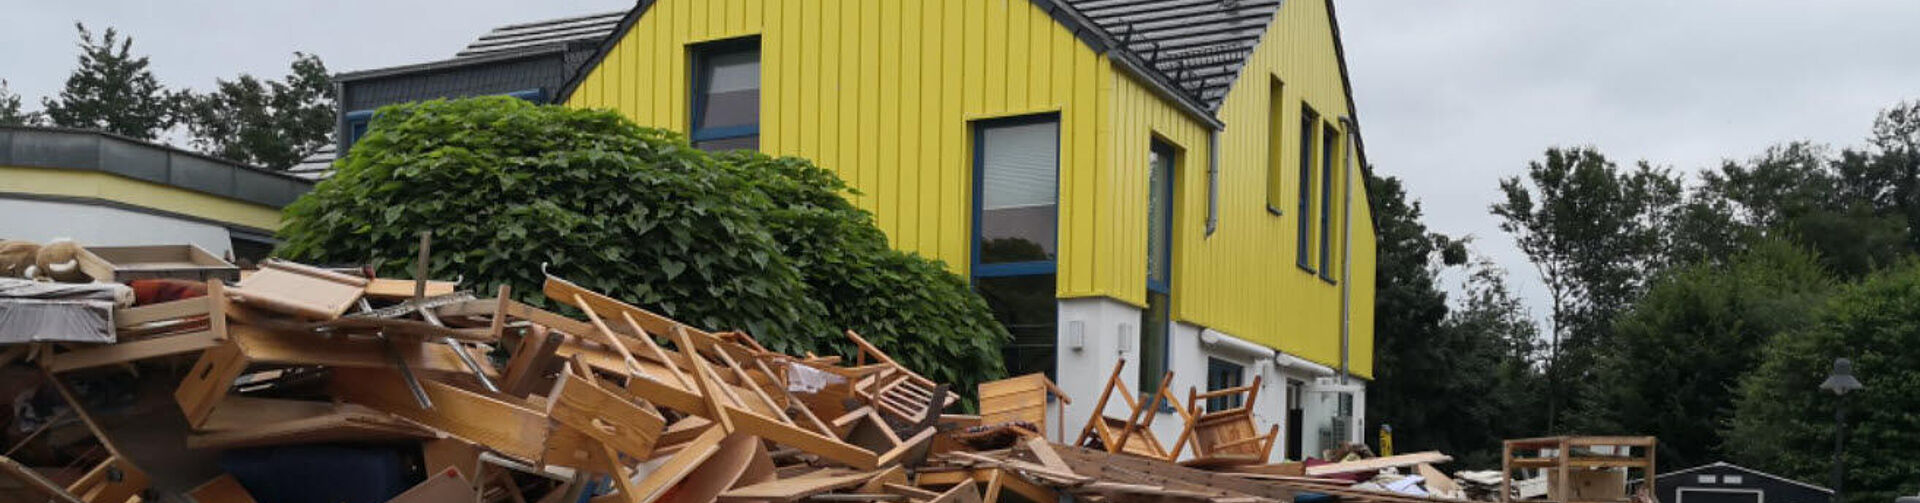 OIL! Tankstellen spenden insgesamt 16.500 Euro für den von der Flut zerstörten Kindergarten in Heimerzheim